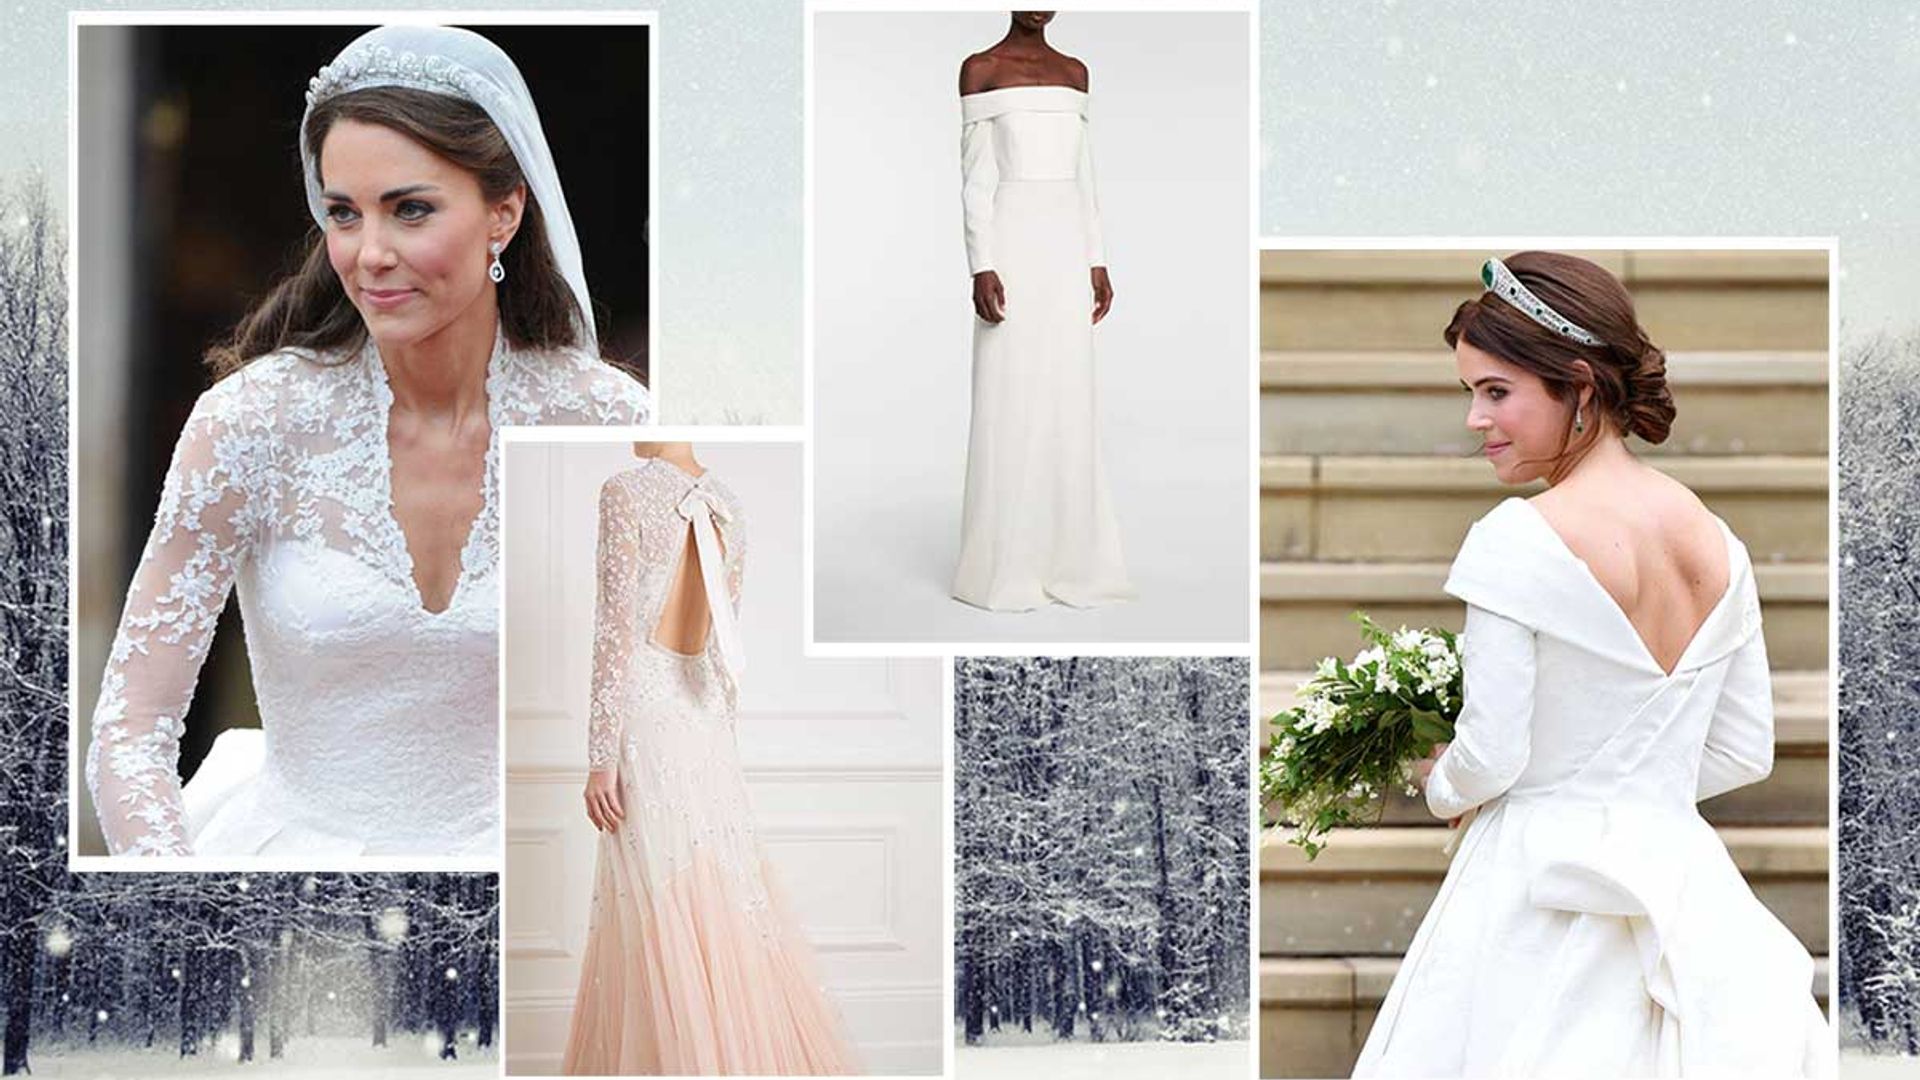 Stunning Wedding Dresses, Embellished, Maxi & Lace, Phase Eight